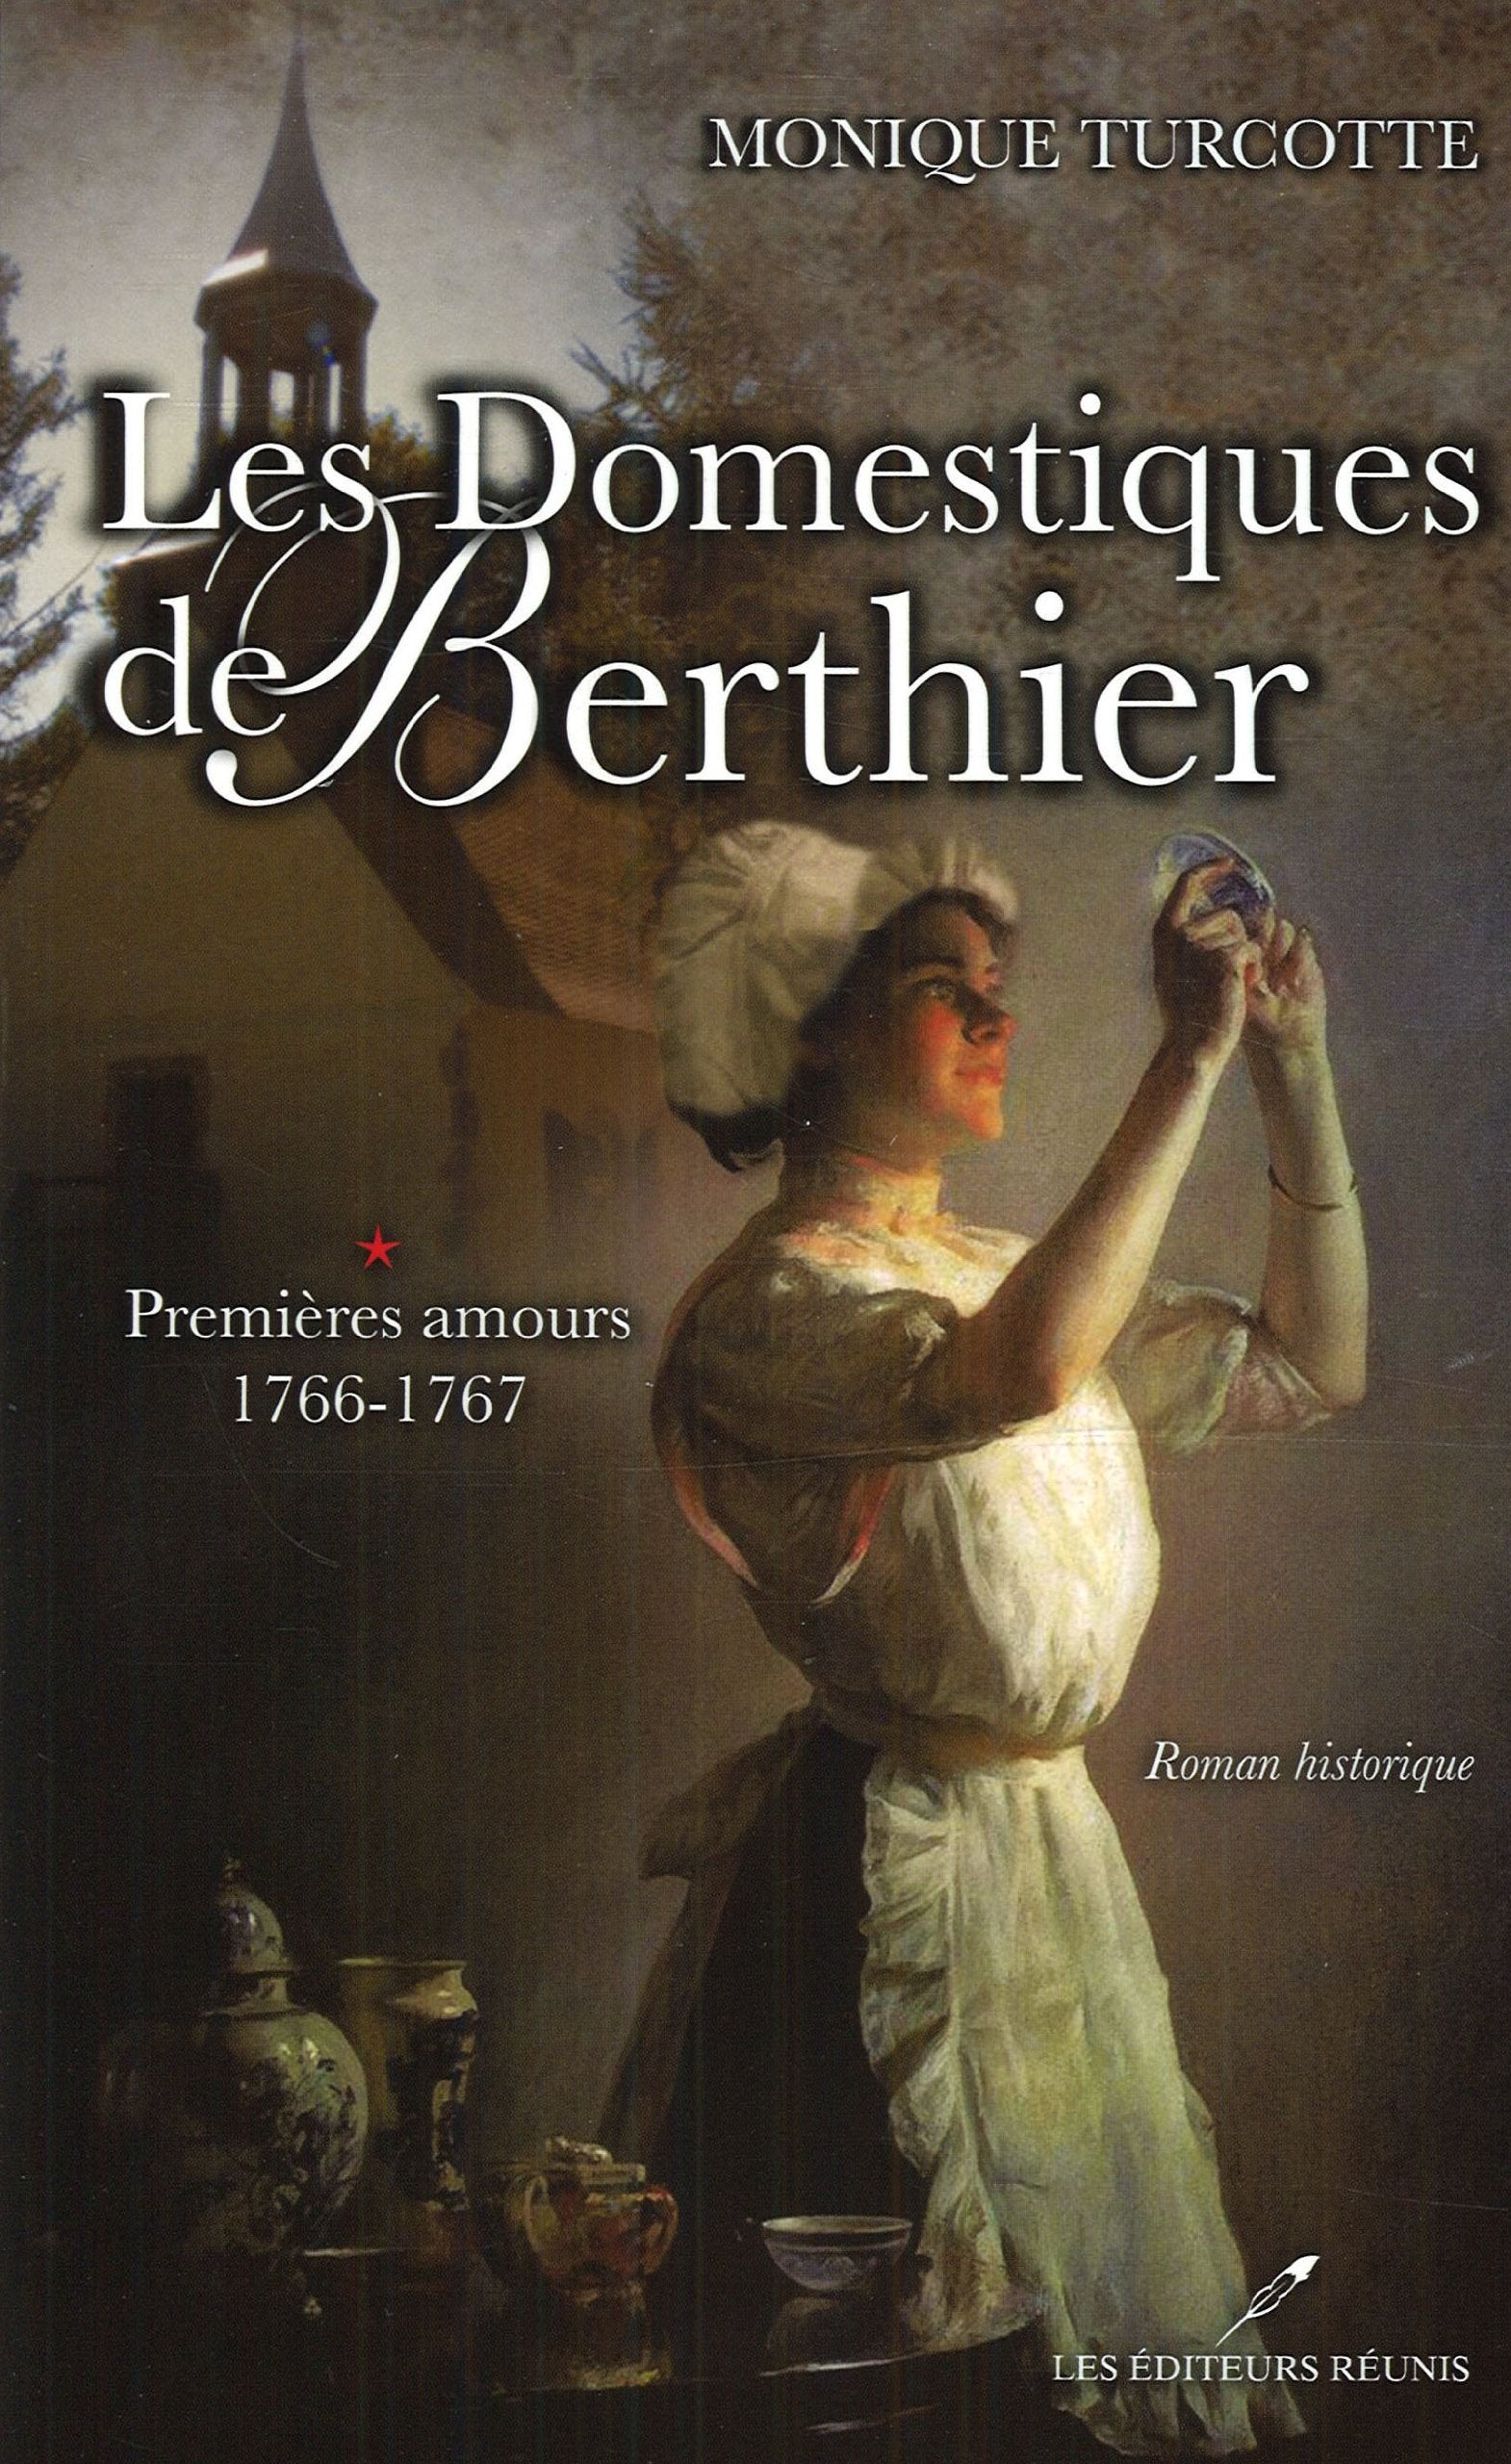 Les domestiques de Berthier # 1 : Premières amours (1766-1767) - Monique Turcotte